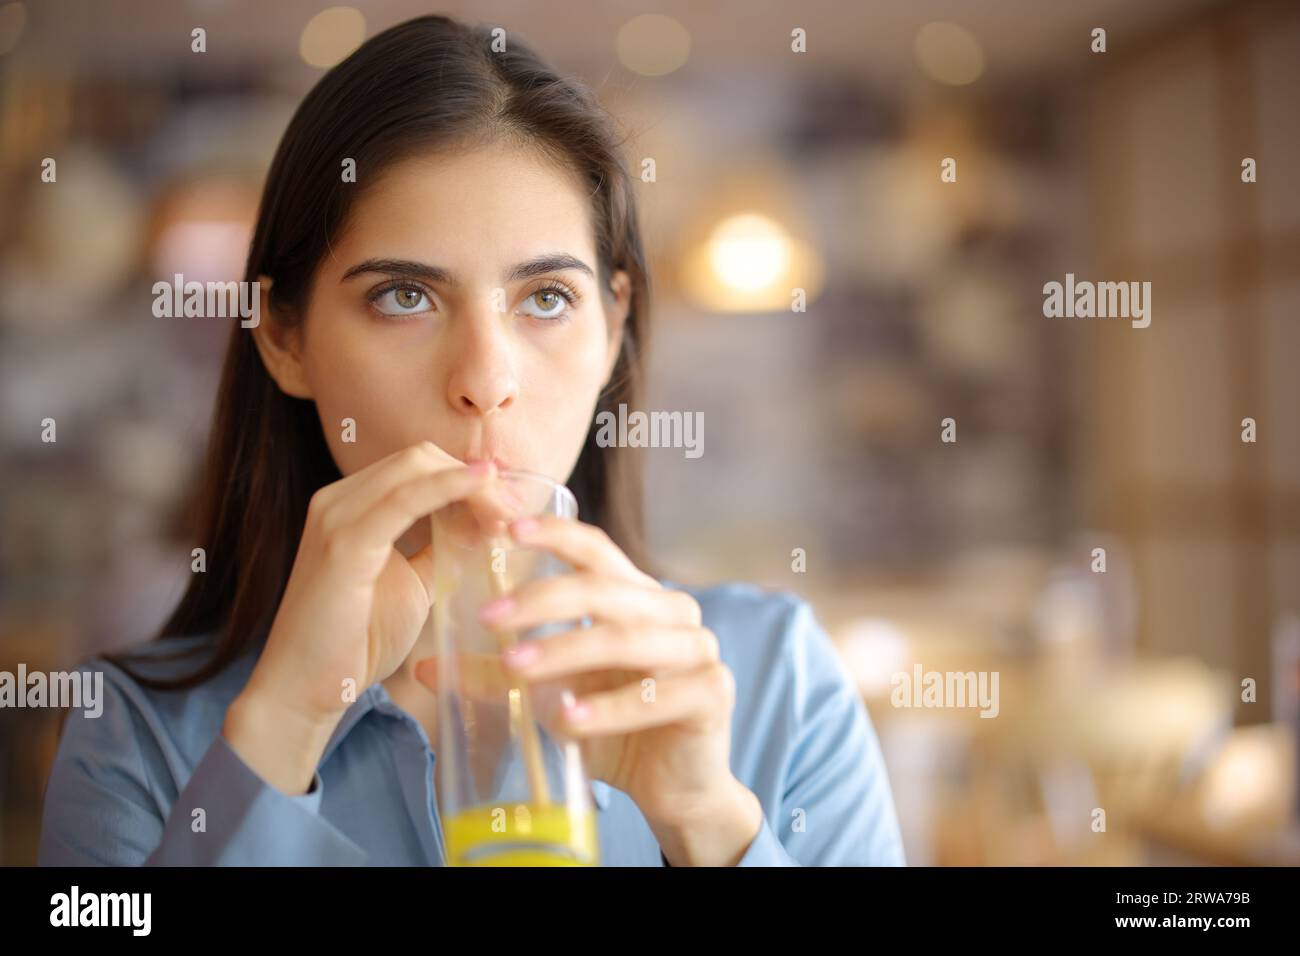 Vorderansicht einer abgelenkten Frau, die in einem Restaurant Orangensaft mit Strohhalm trinkt Stockfoto